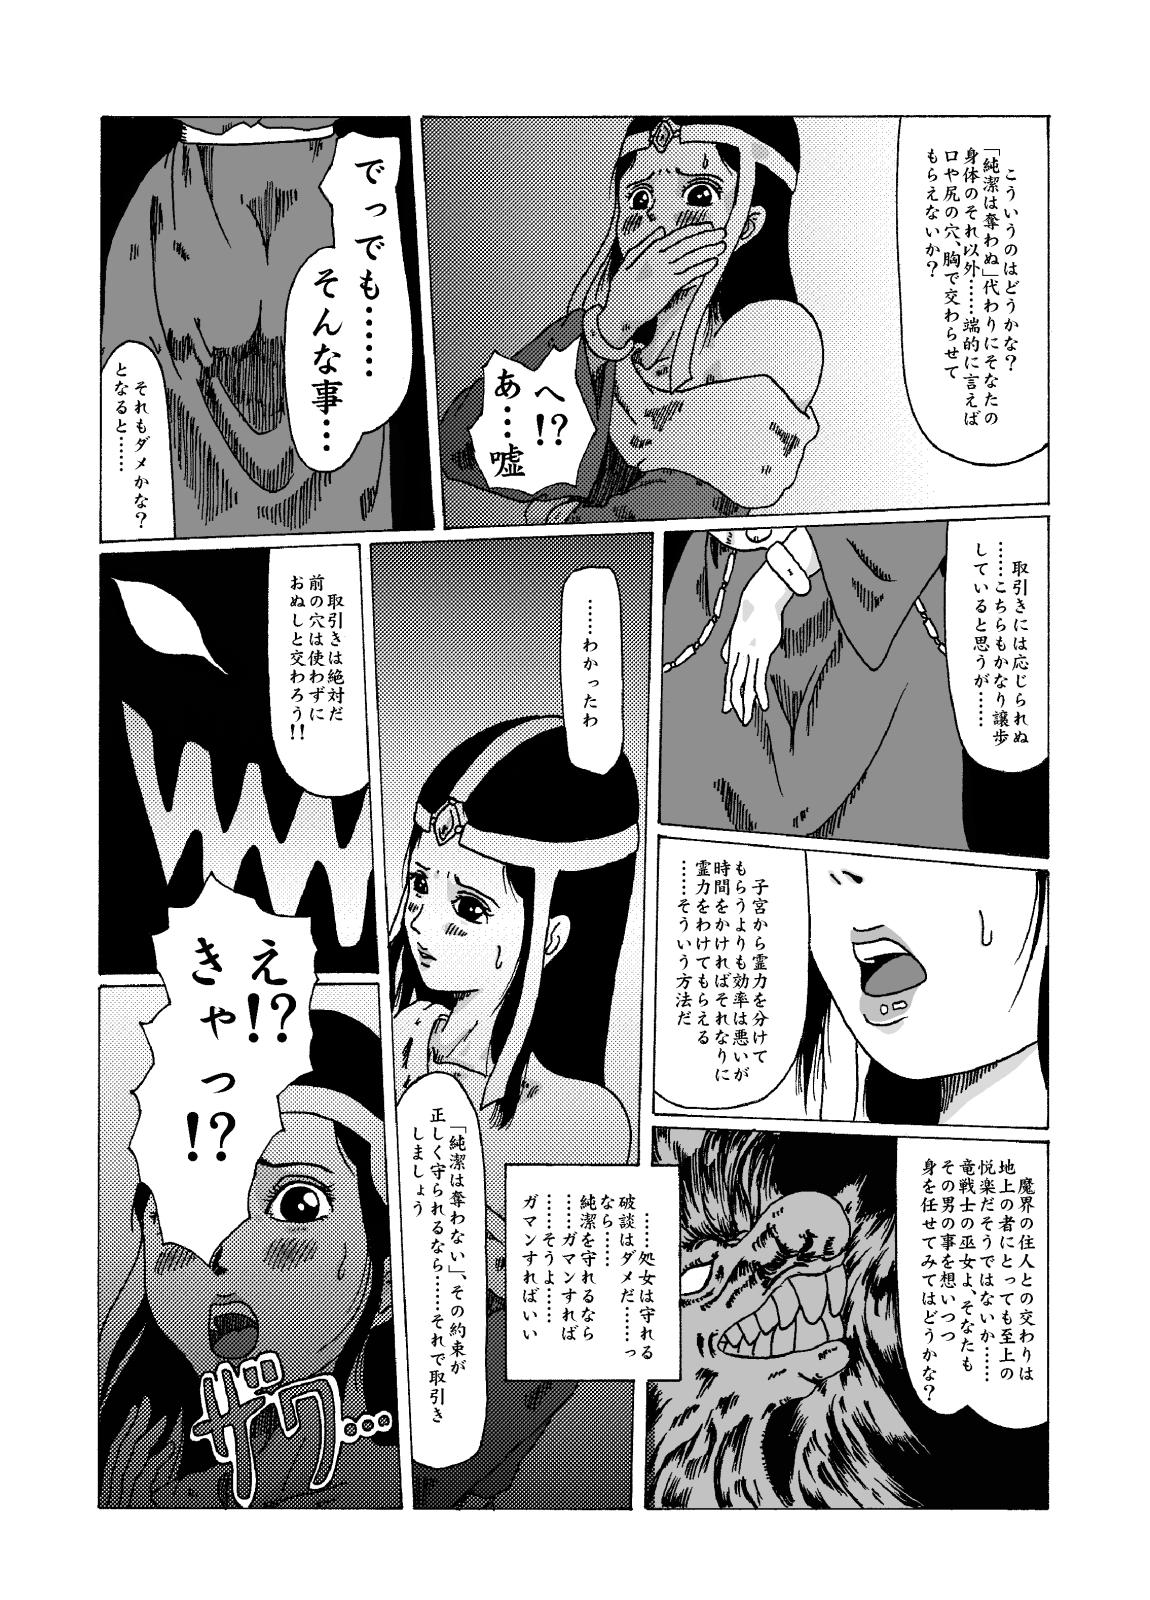 Gostoso Meruru Hakai - Dragon Quest Dai no Daibouken Ibunroku - Dragon quest dai no daibouken Office - Page 5